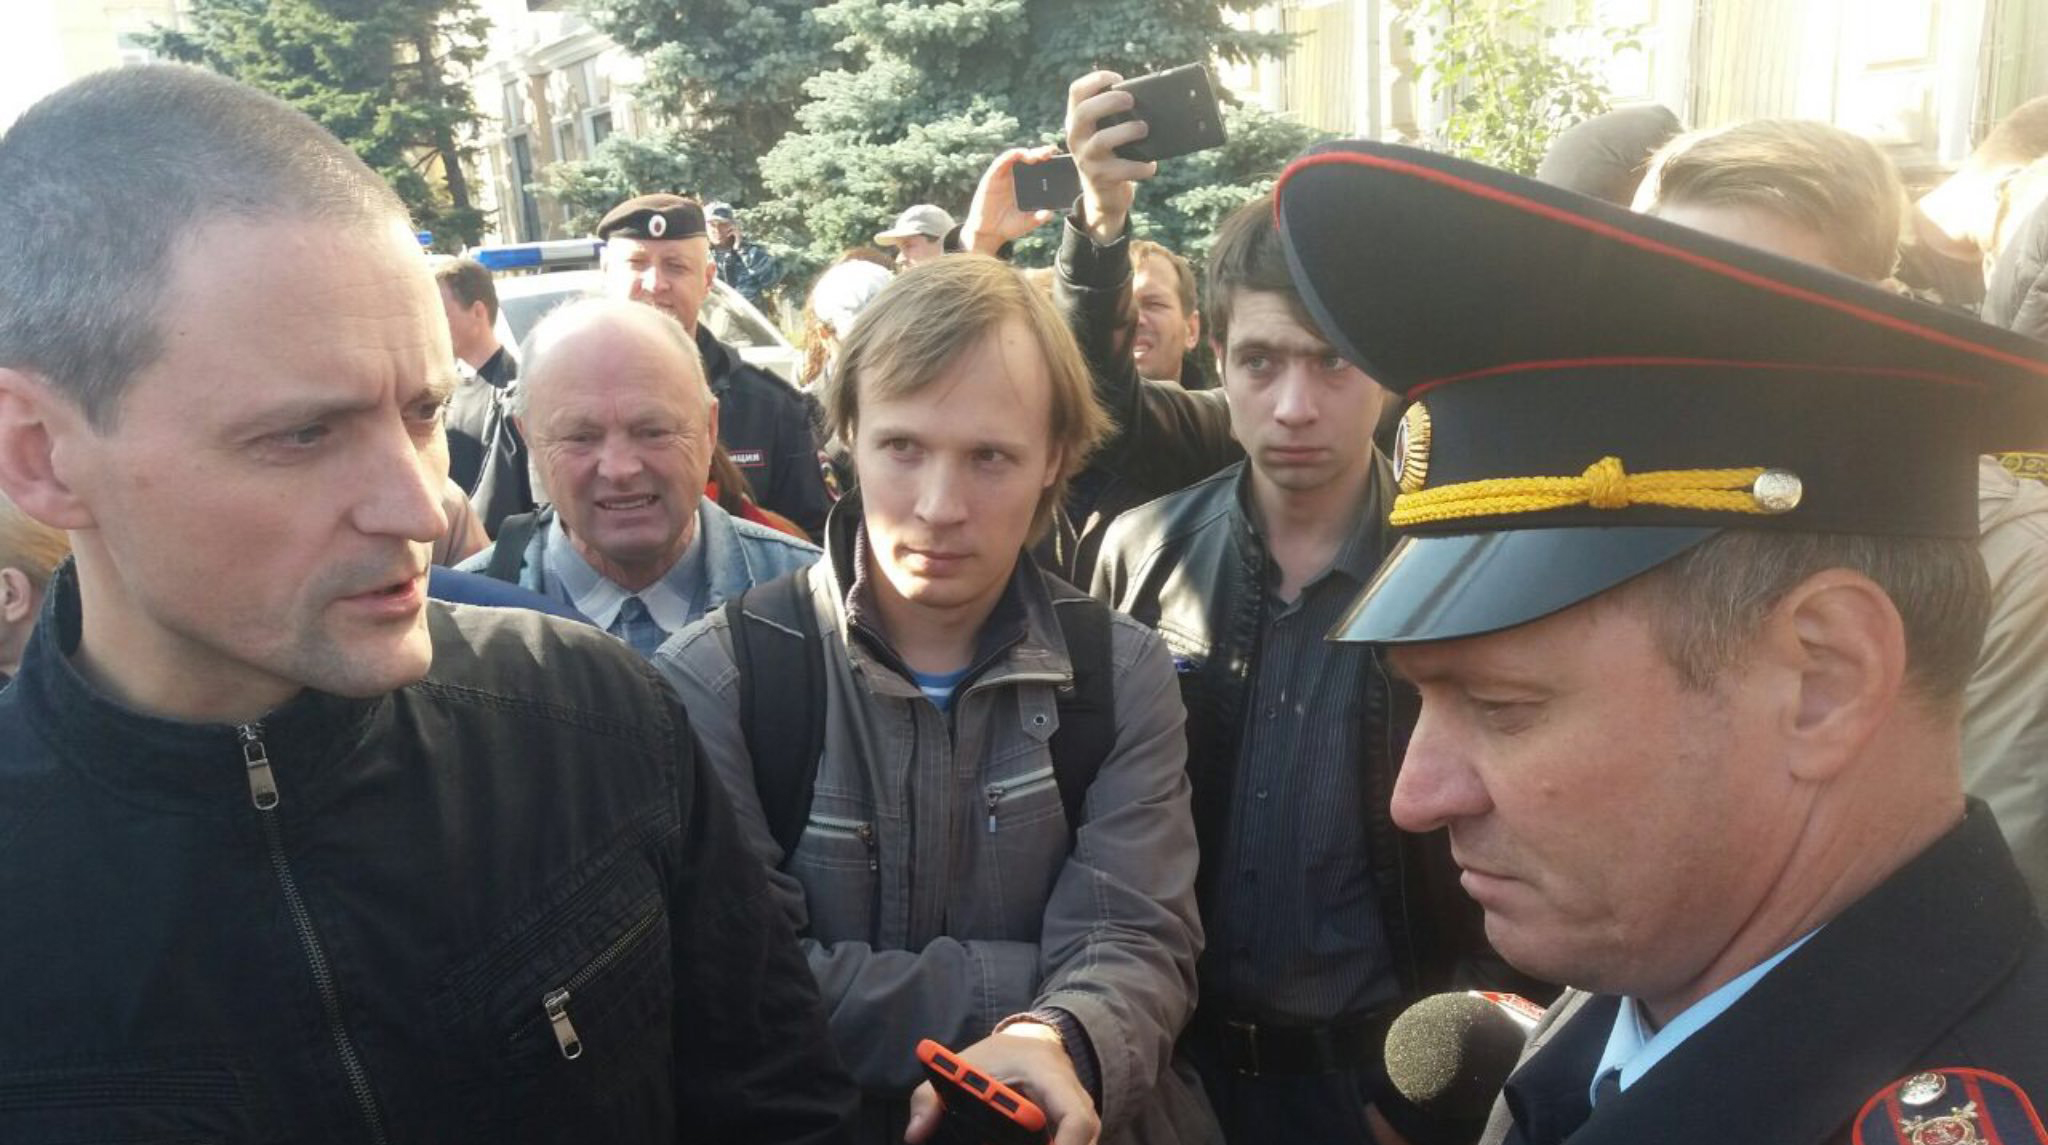 Сергей Удальцов написал в Twitter, что полиция задержала примерно 30 человек undefined